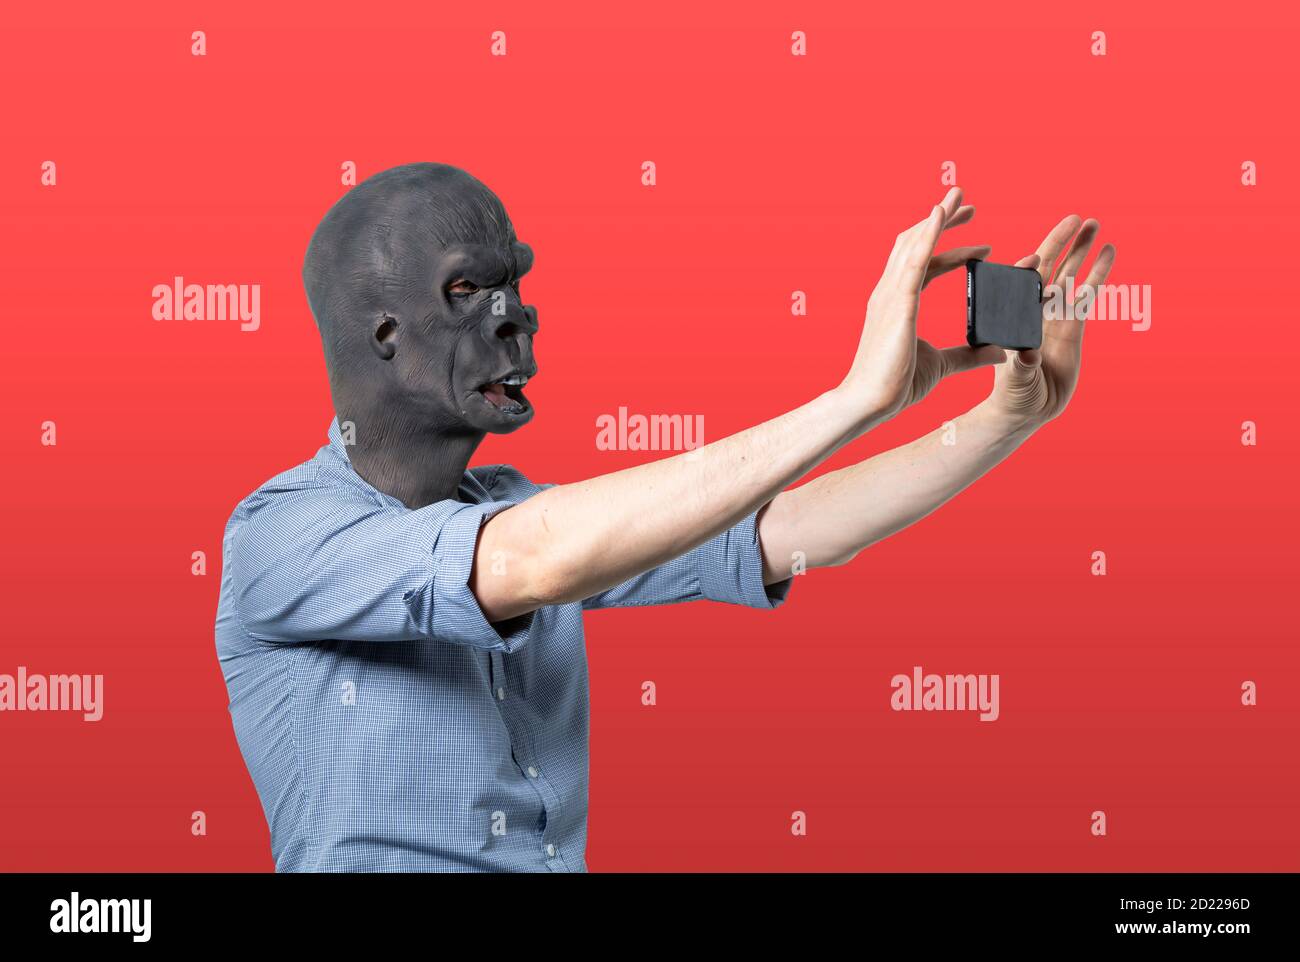 Homme dans le masque de gorille prenant selfie. Découpe isolée sur fond rouge. Prise de vue moyenne. Vue latérale. Banque D'Images